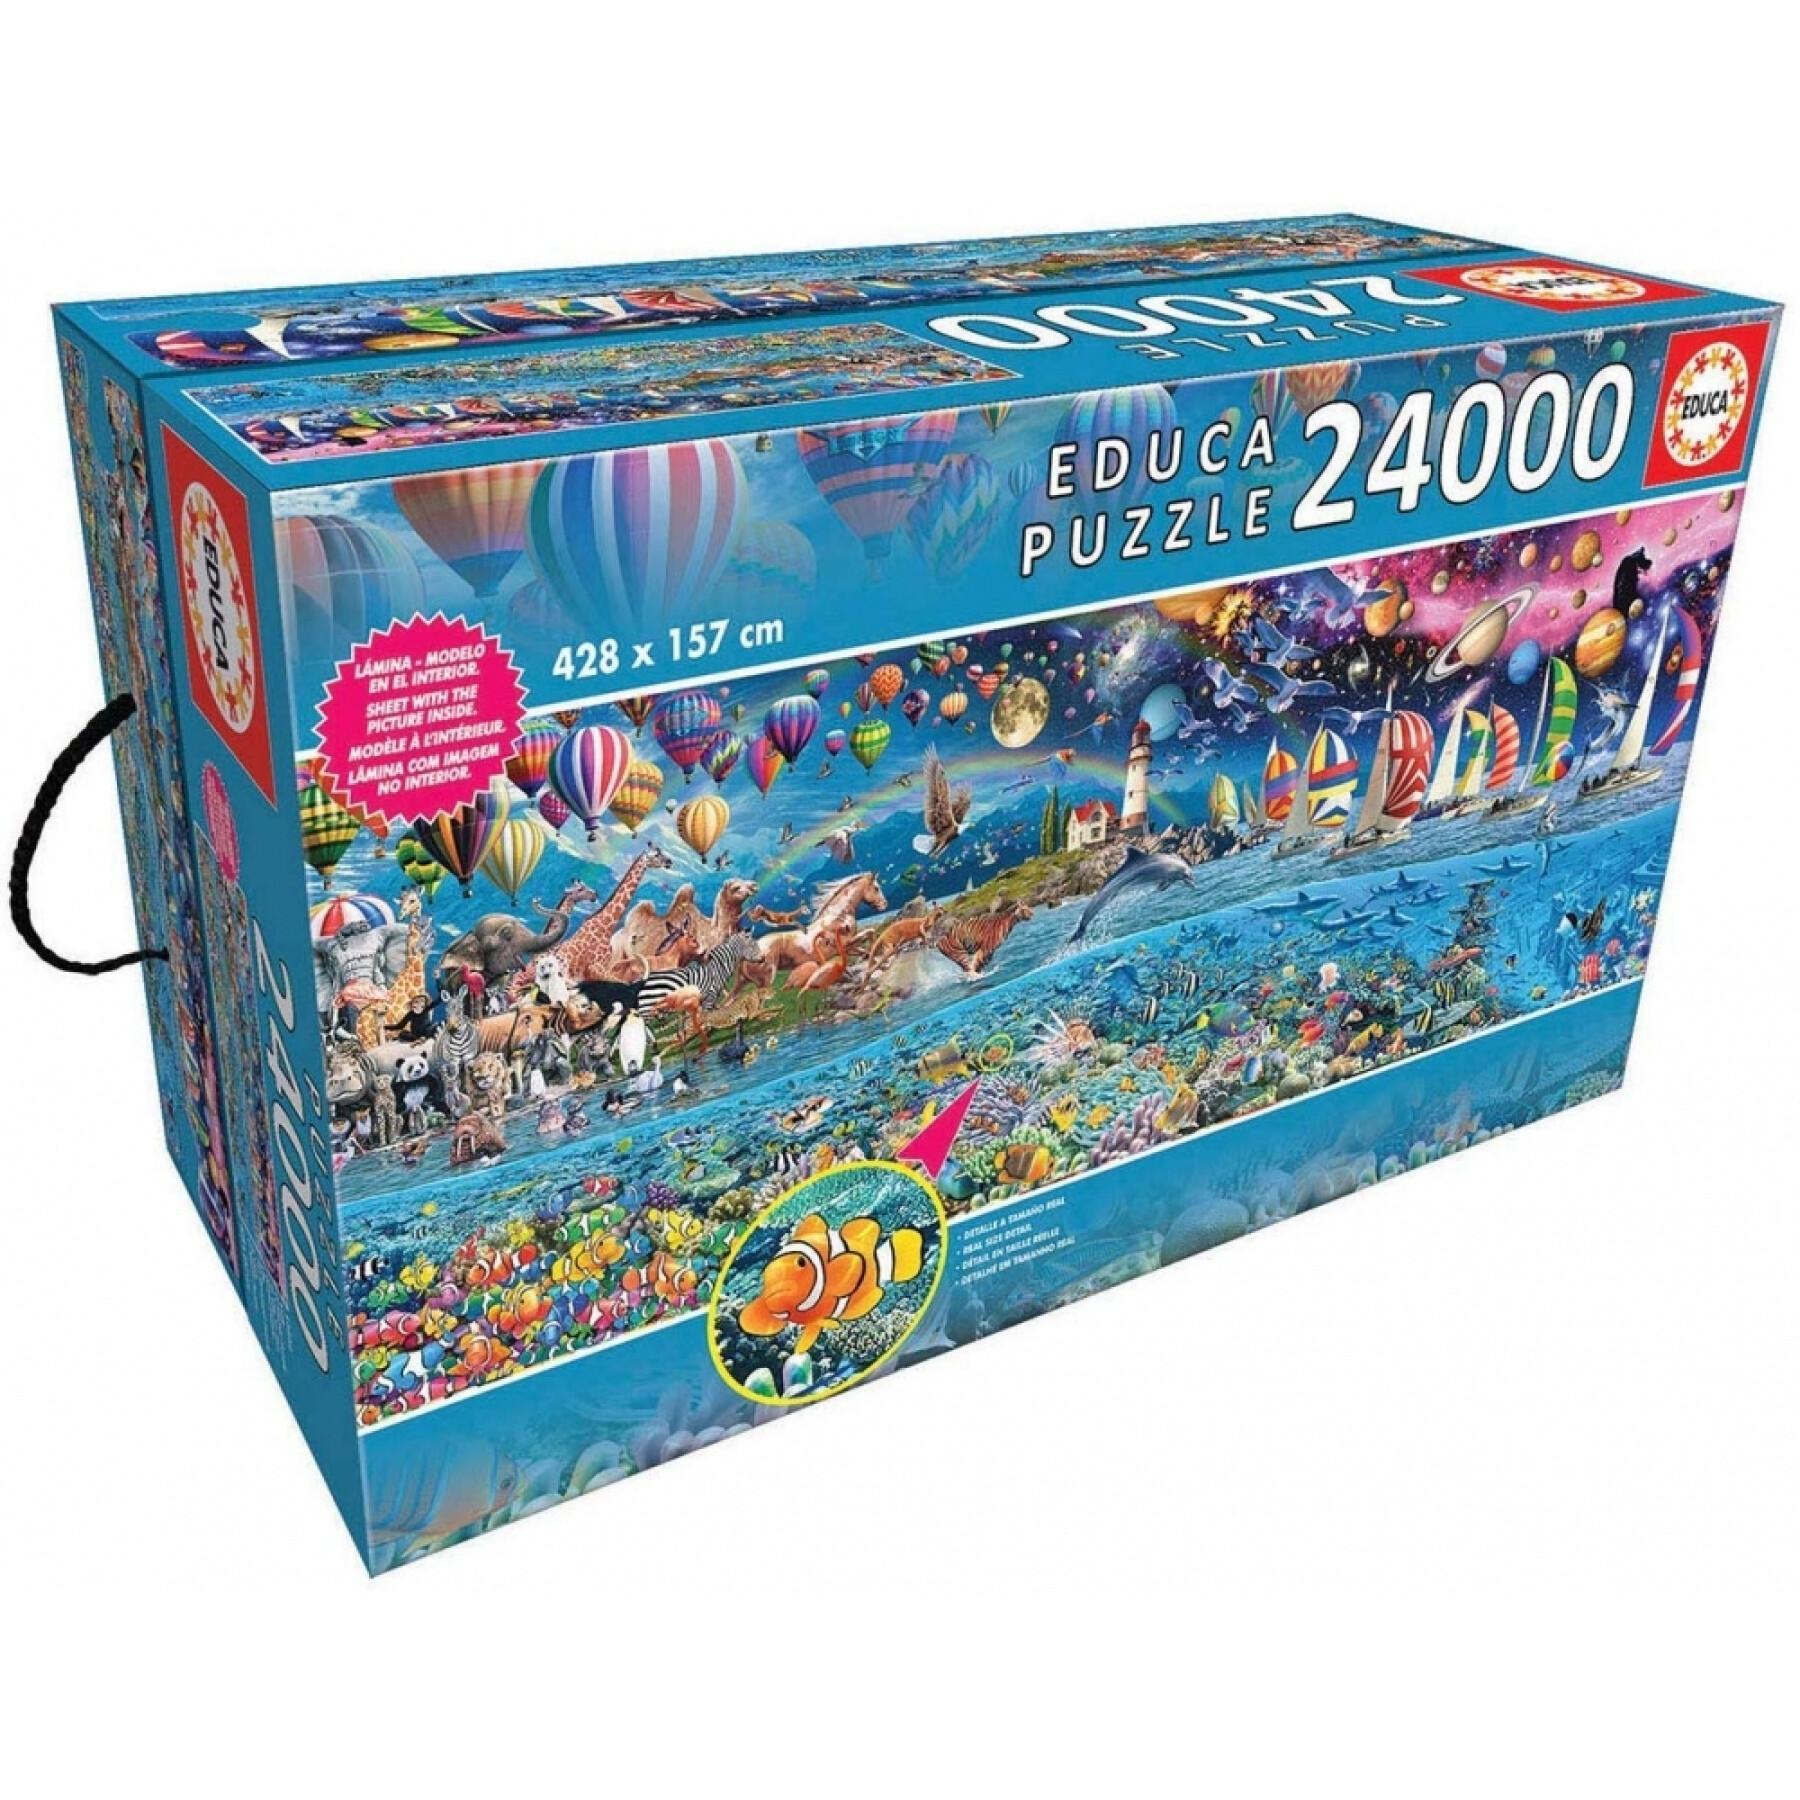 24000 pieces puzzle Educa La Vida